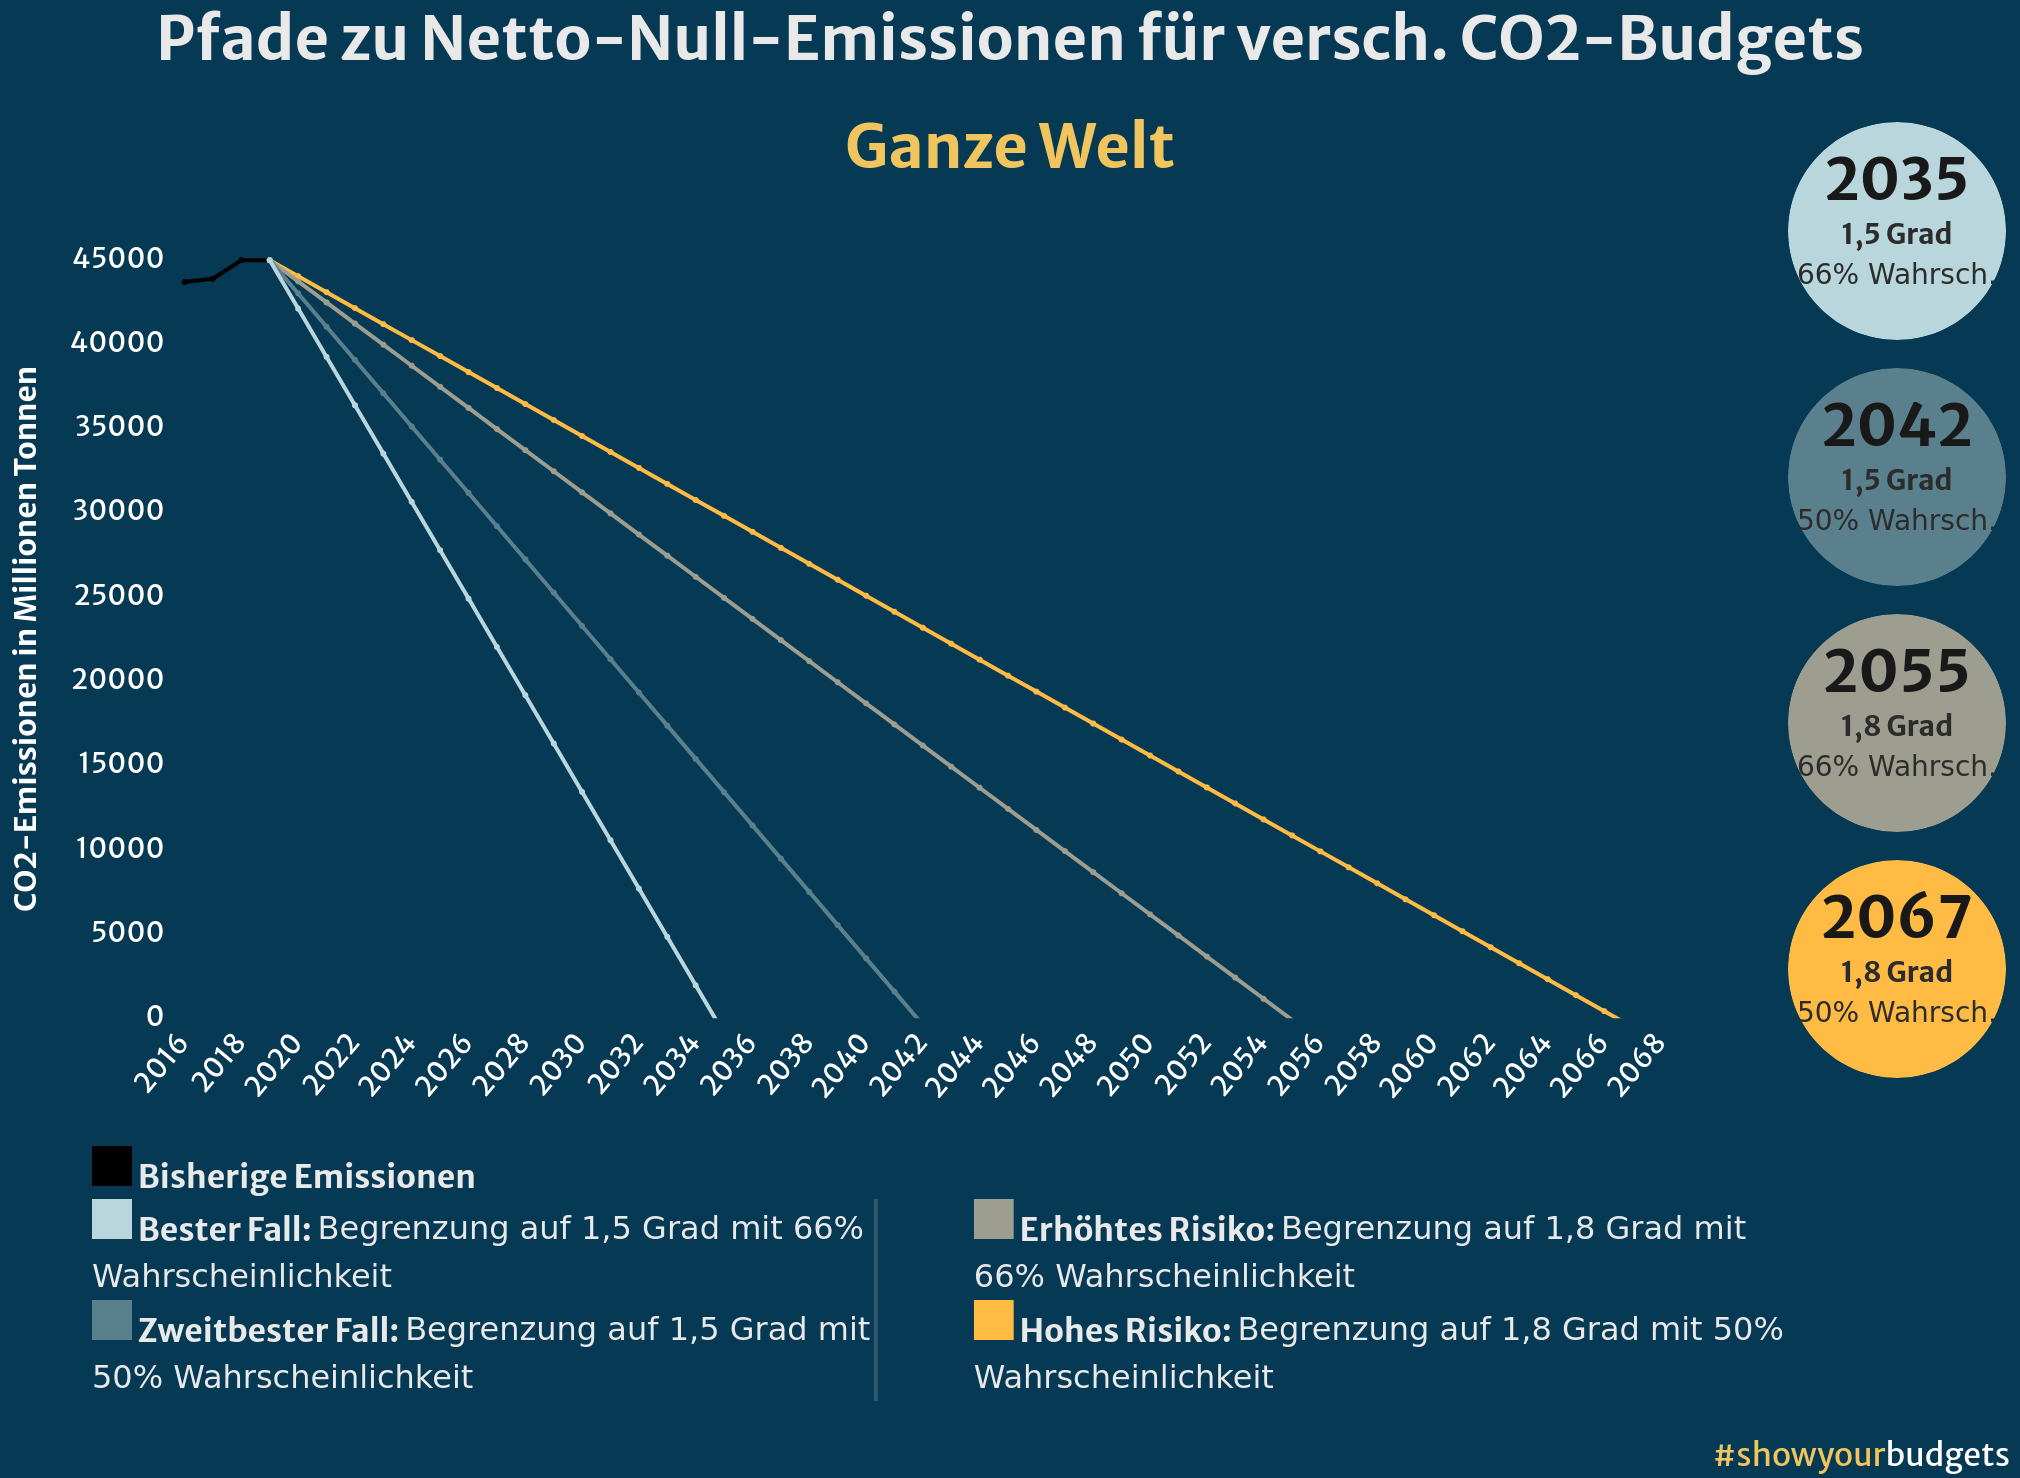 Pfade zu Netto-Null-Emissionen für die ganze Welt